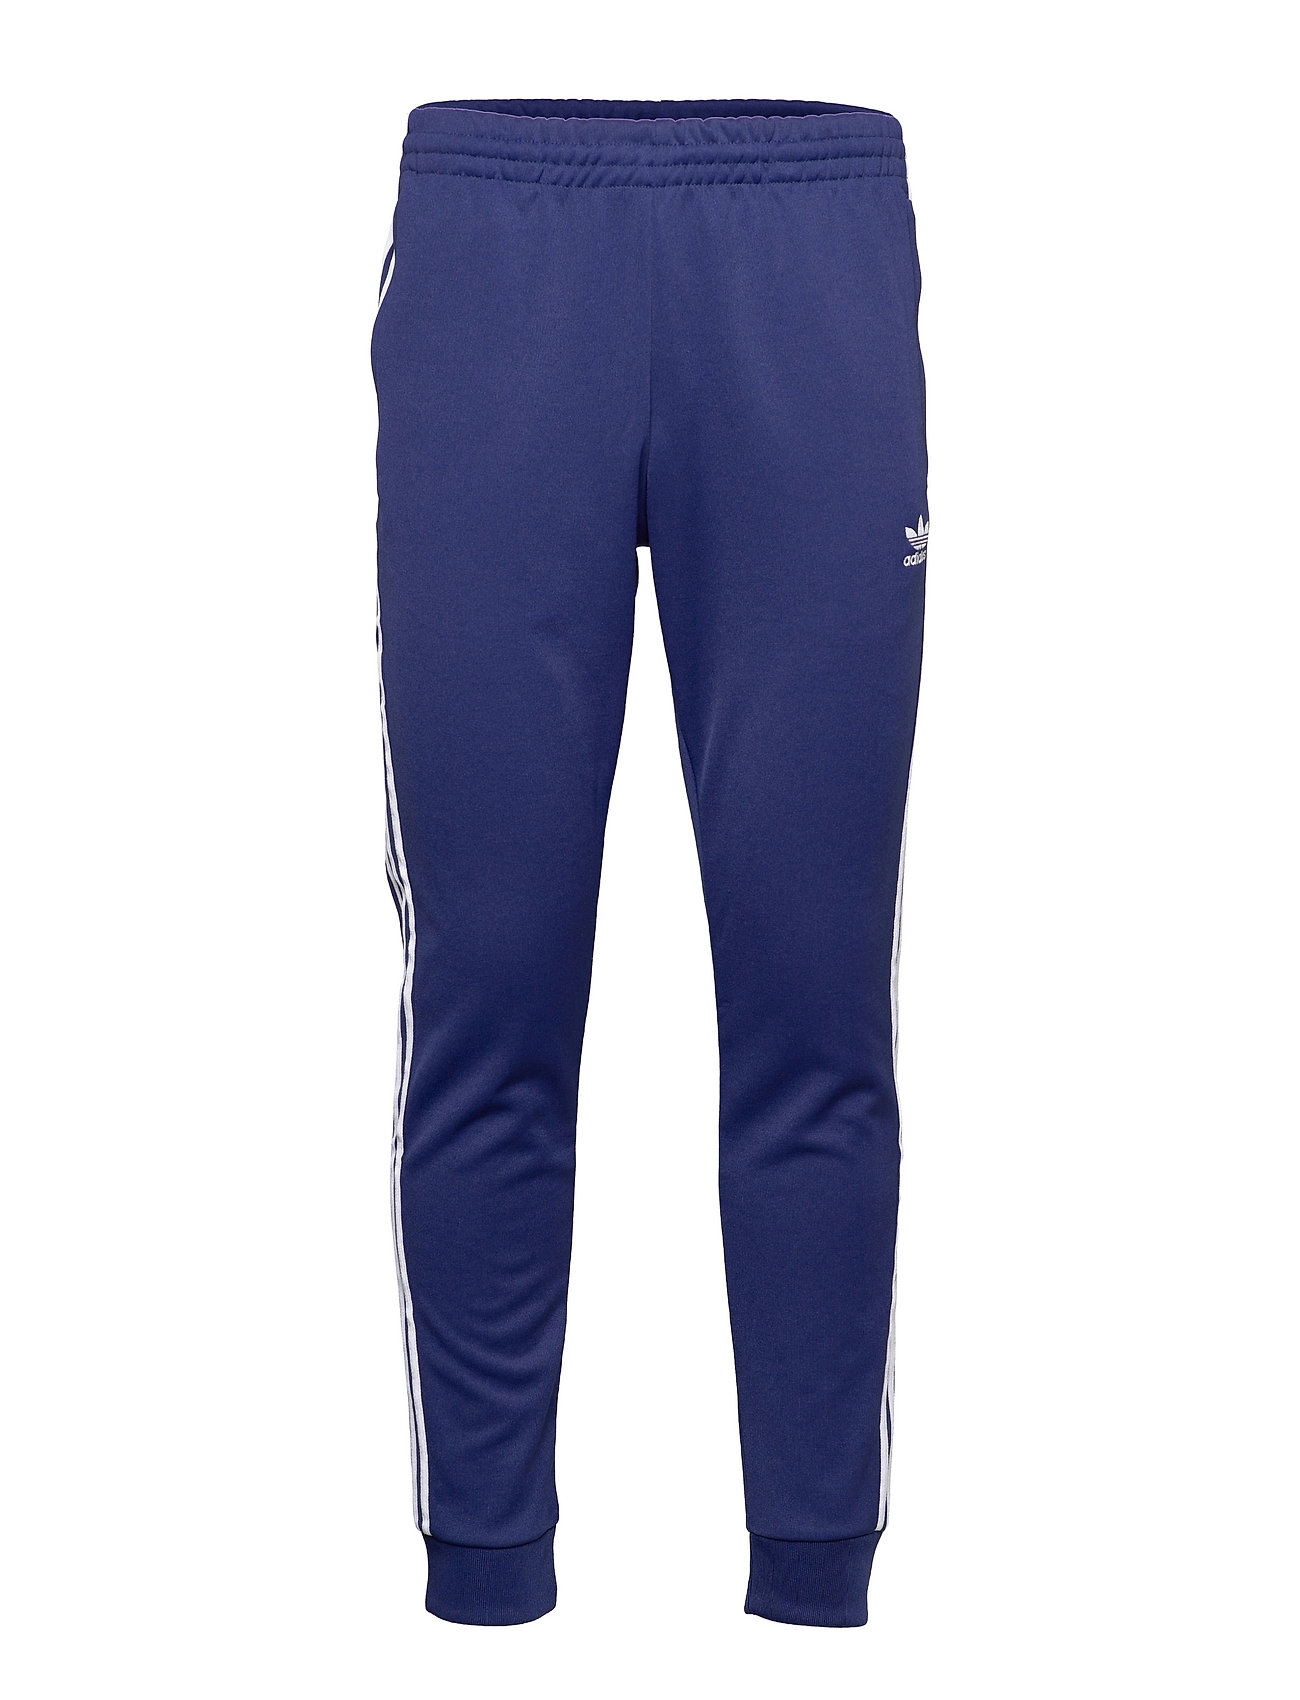 Adicolor Classics Primeblue Superstar Track Pants Collegehousut Olohousut Sininen Adidas Originals, adidas Originals